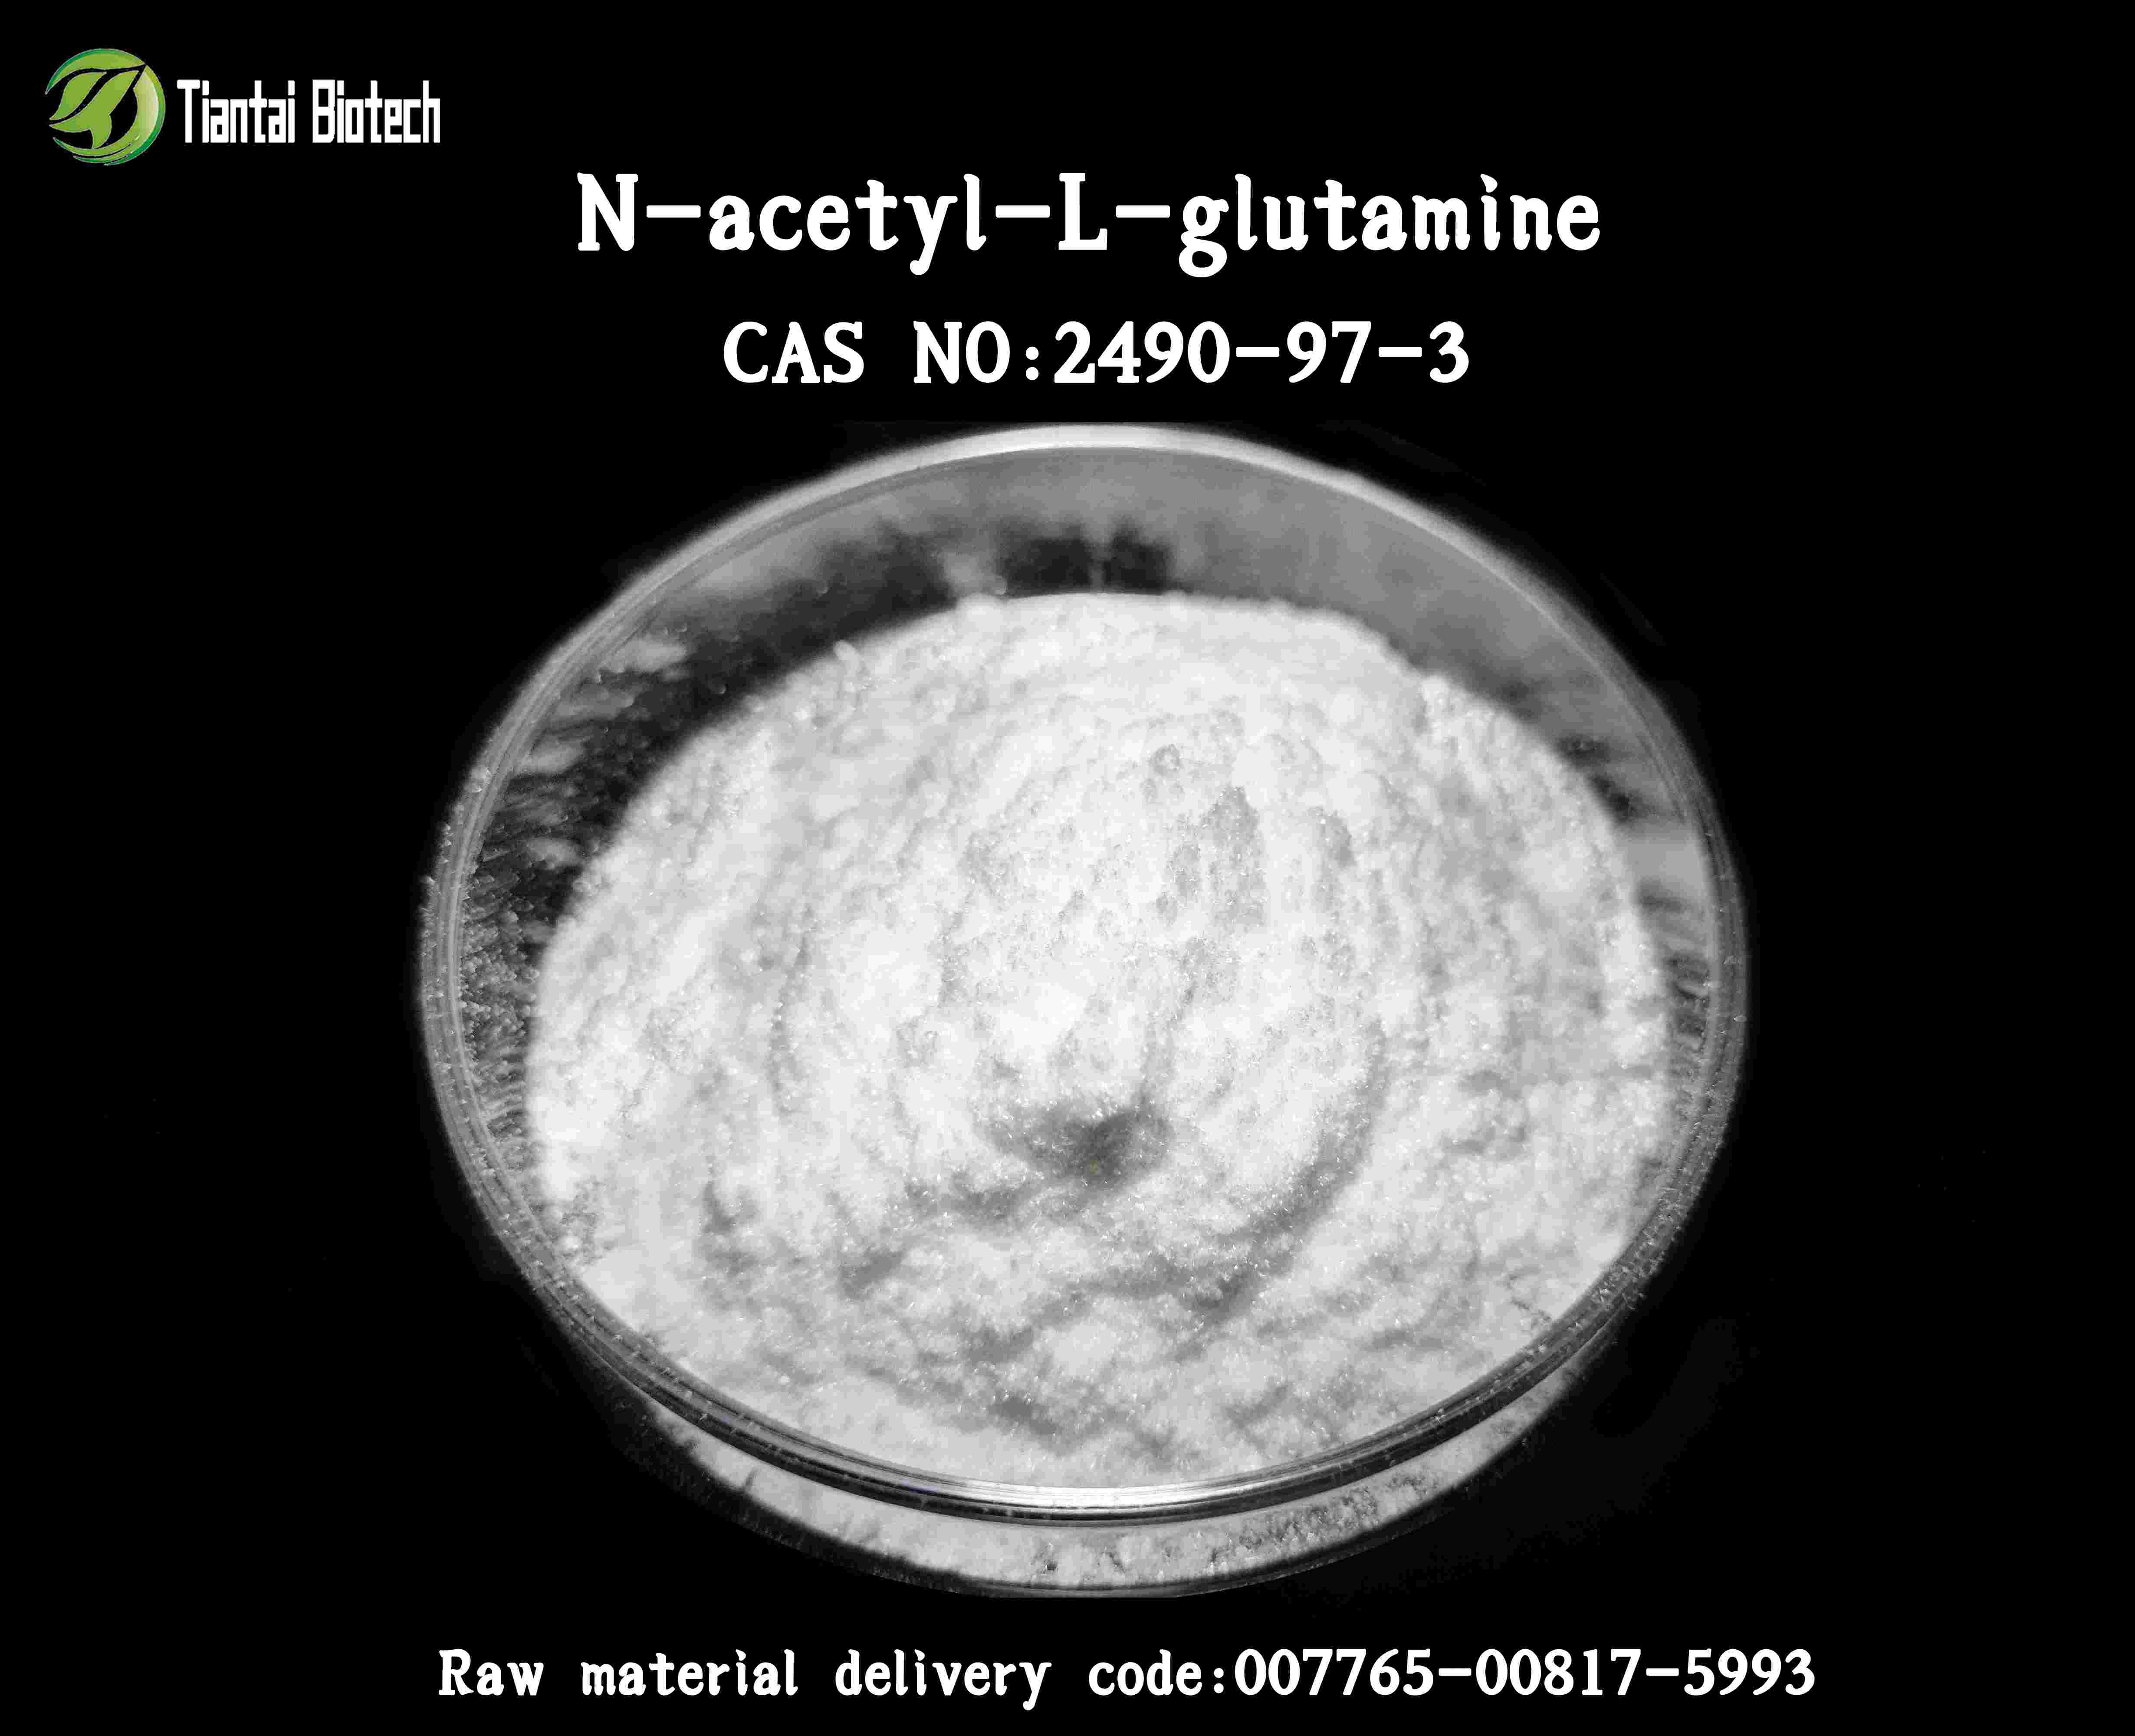 N-ACETYL-L-GLUTAMINE